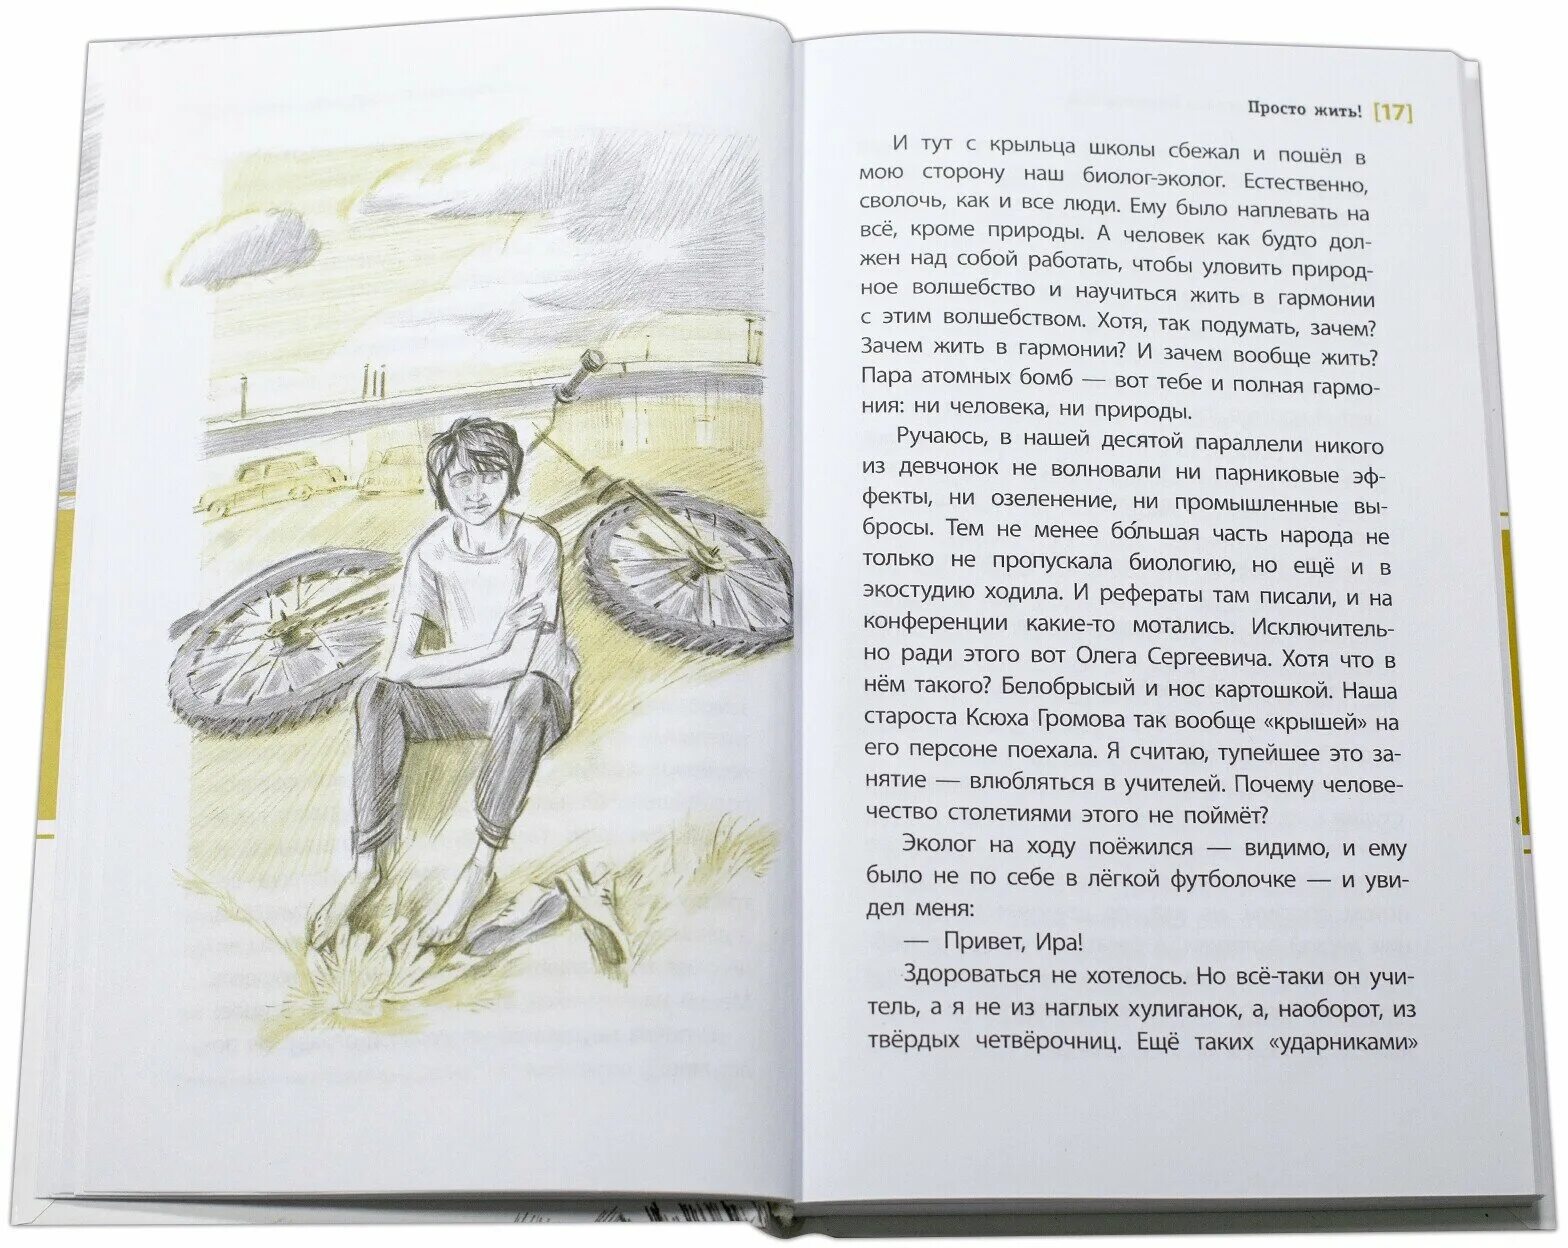 Произведение просто жить. Просто жить книга. Просто жить книга Пономарева. Иллюстрации к книге Пономаревых просто жить.